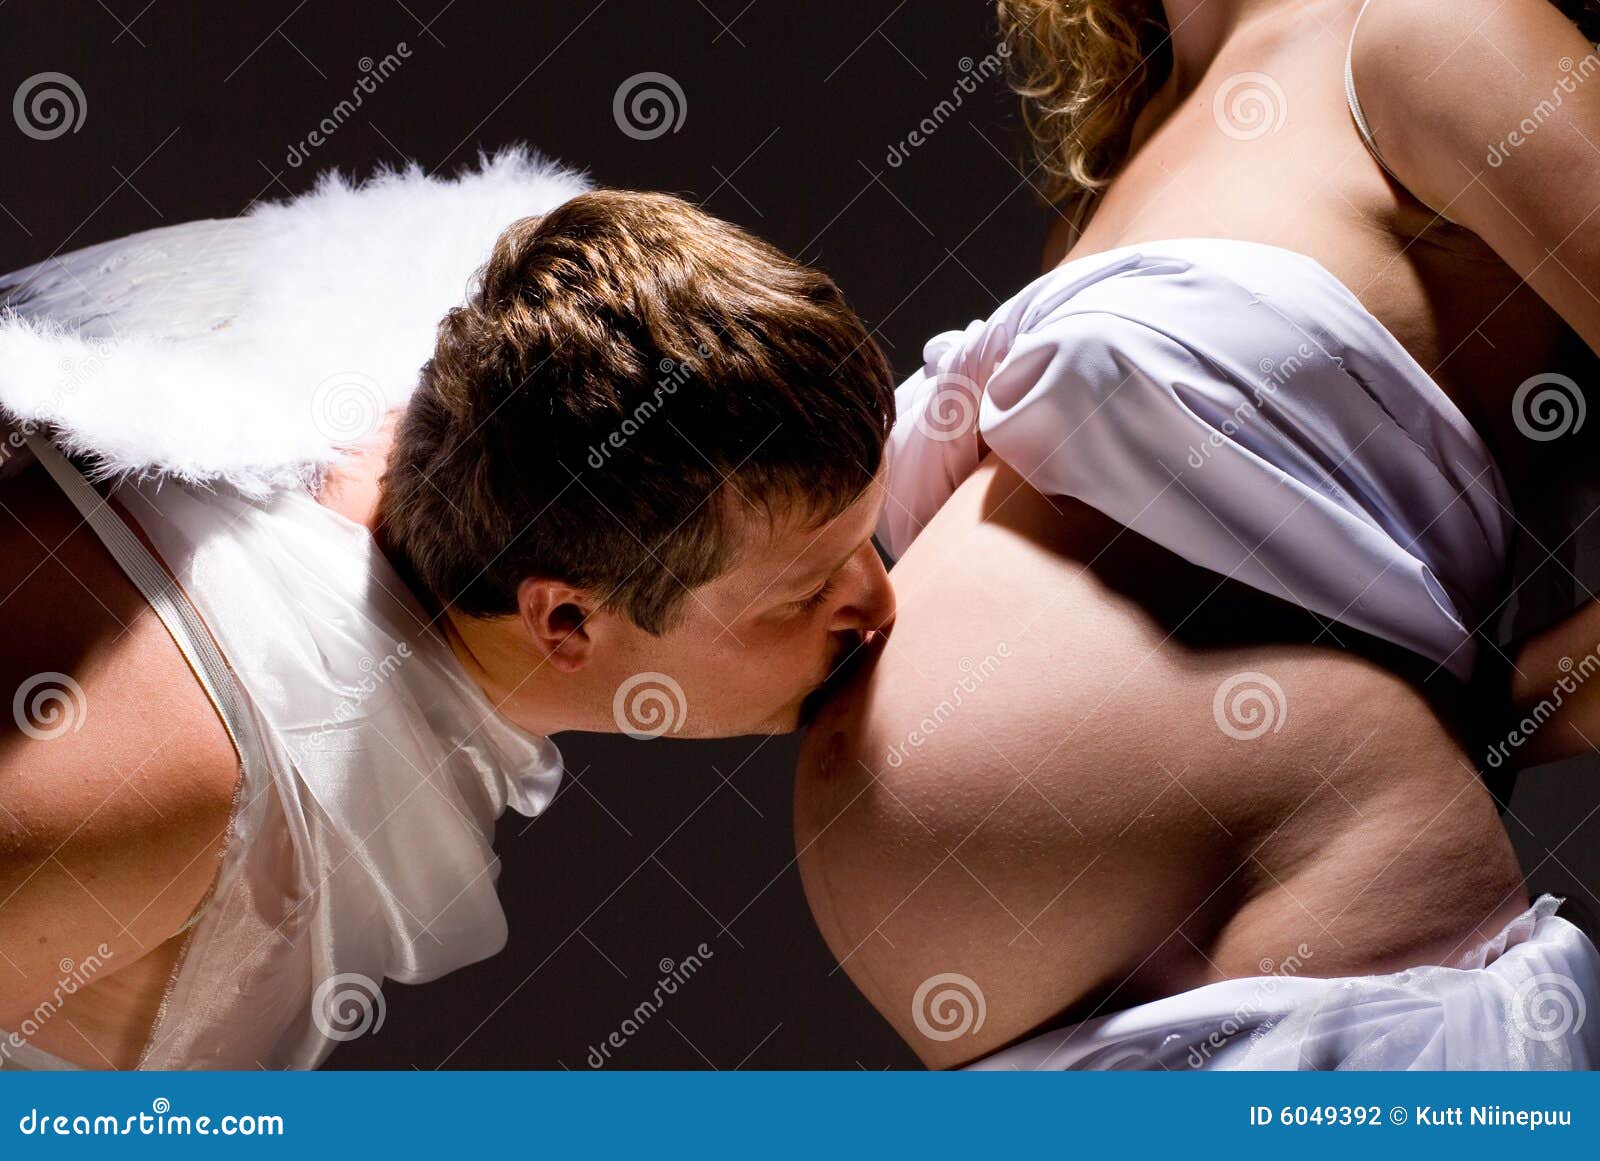 парень целует в живот и грудь фото 16